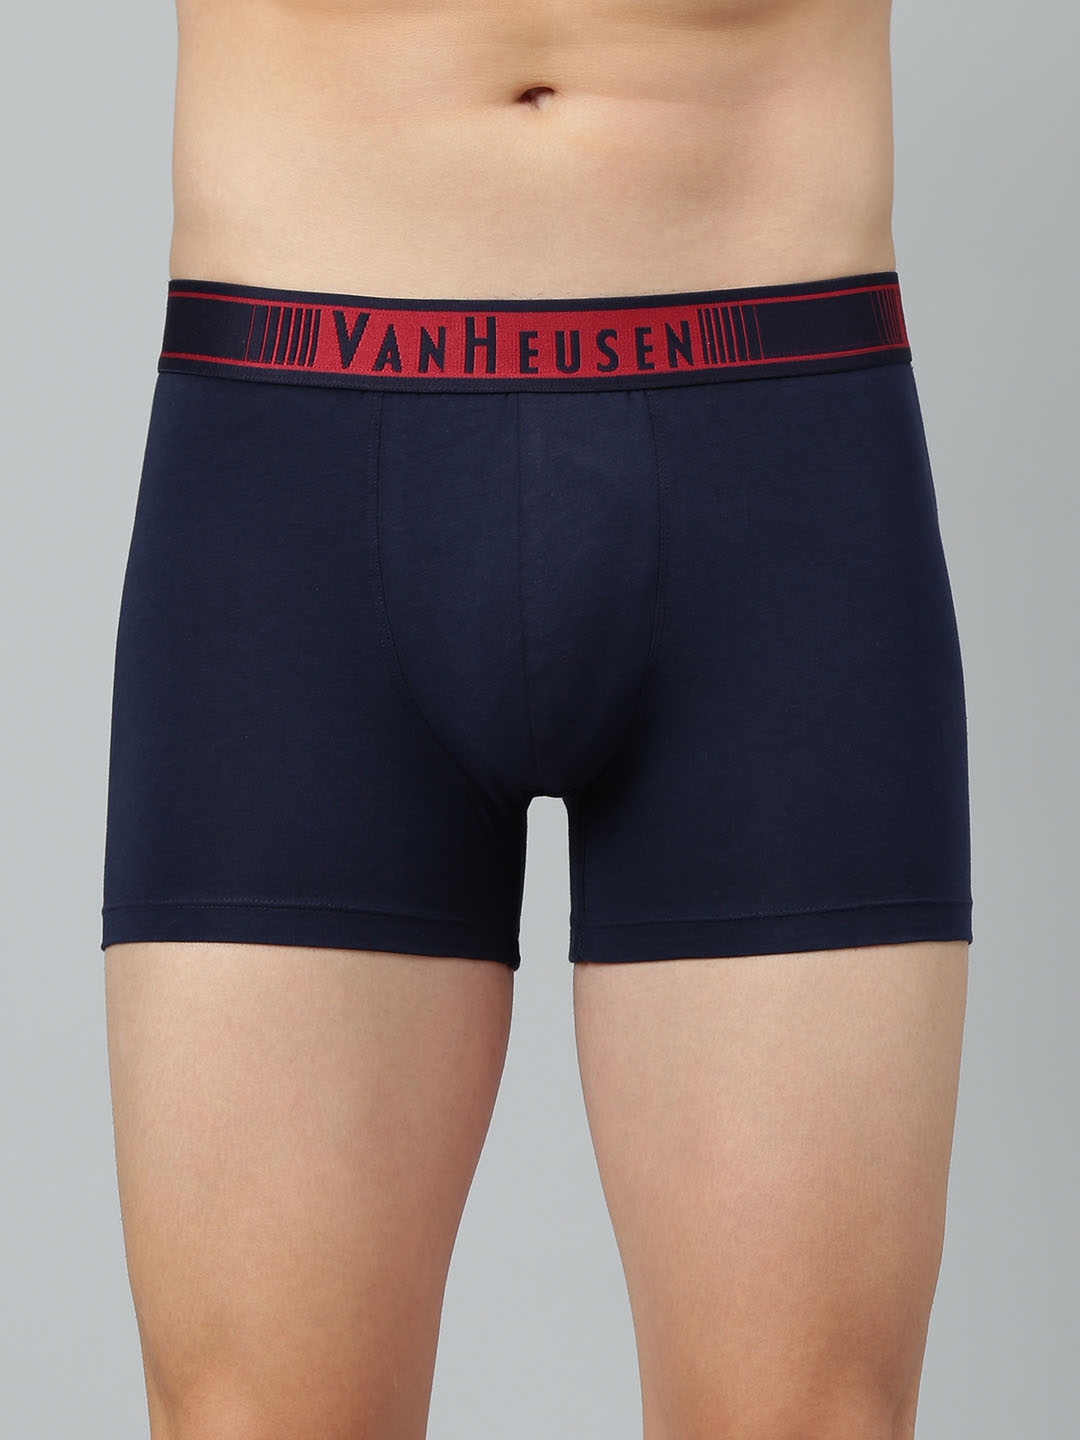 Van Heusen Men Antibacterial Trunks Underwear Premium Combed Cotton Label  free